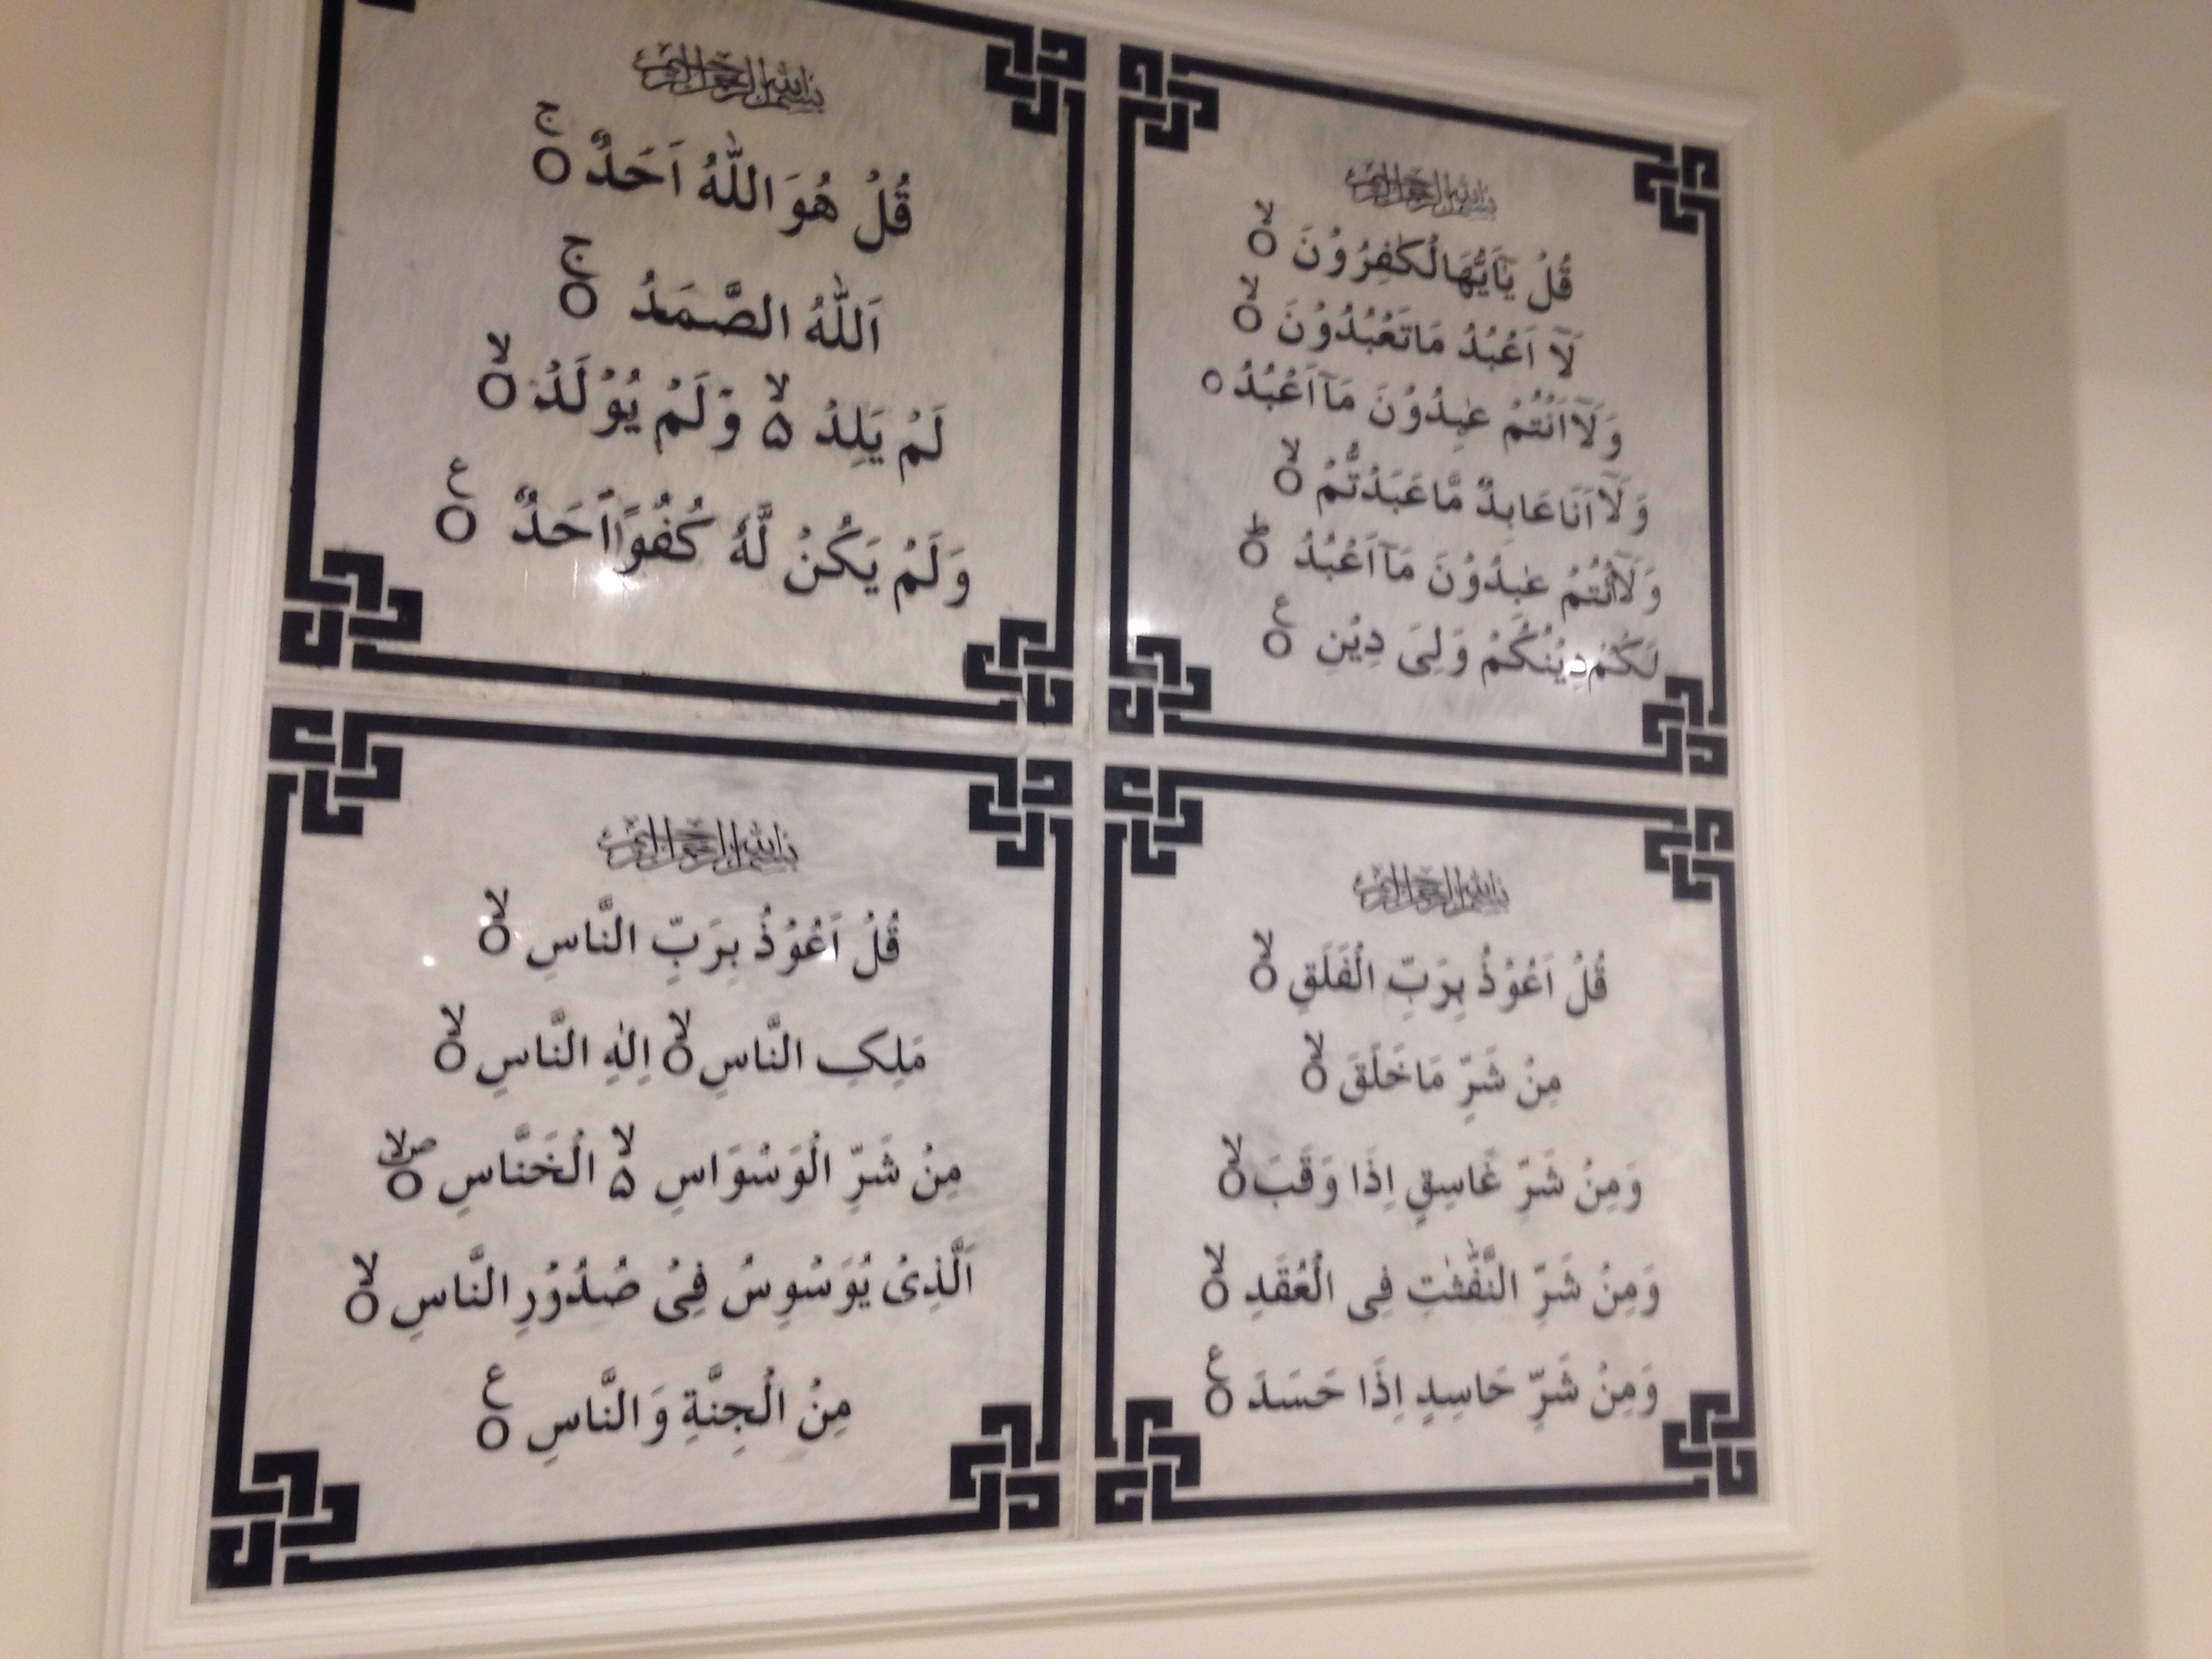 اليوم السابع داخل أكبر مركز إسلامى للجالية المصرية بواشنطن  (14)